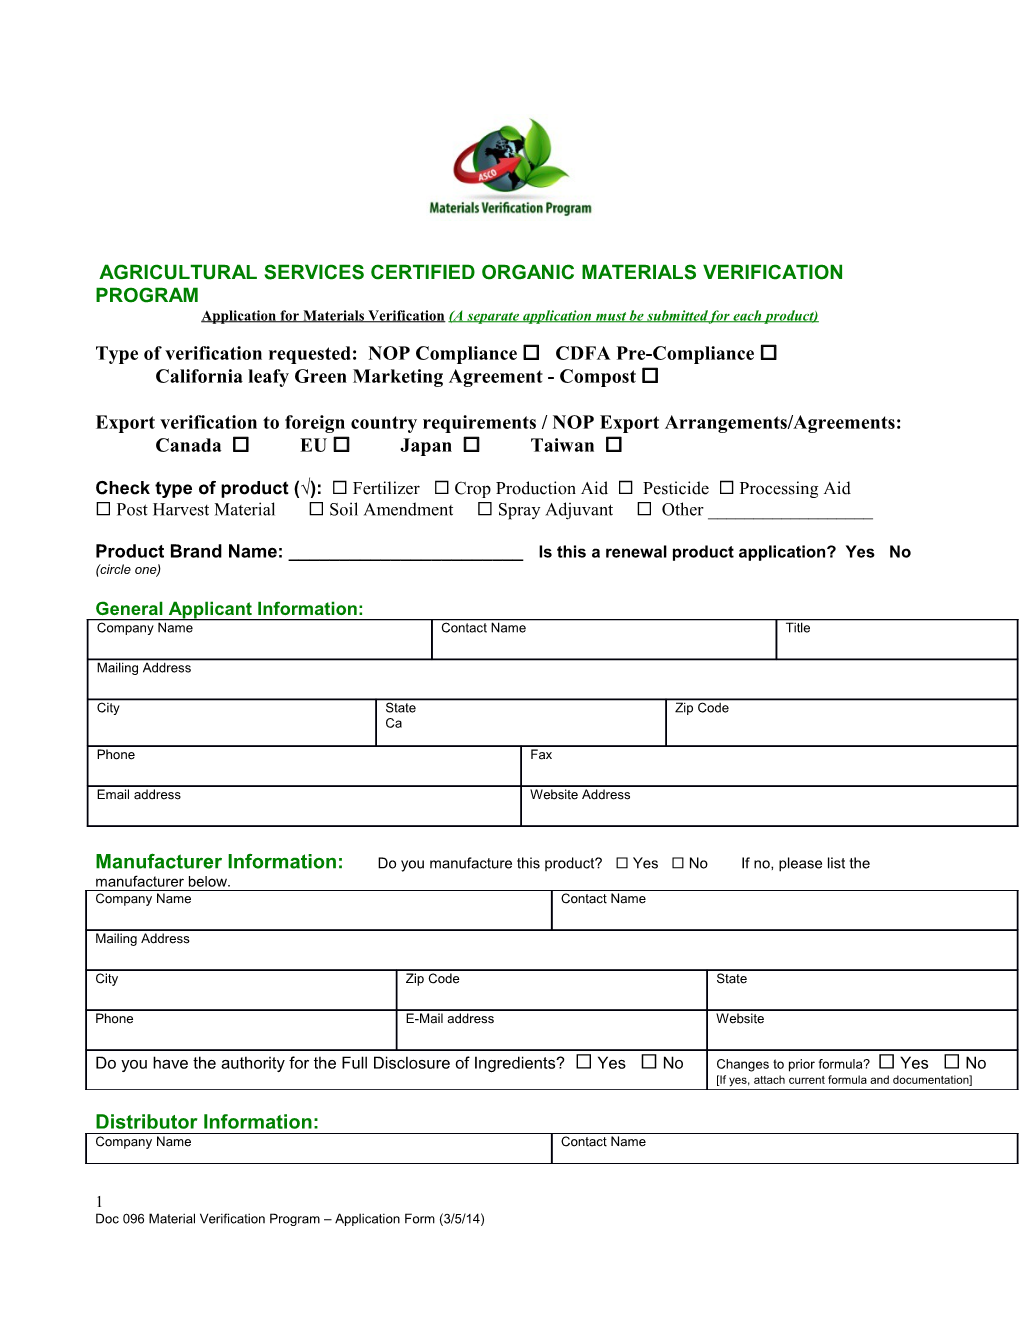 Foodanimal/Organic/Certificate/2006/Materials/Newagr2289